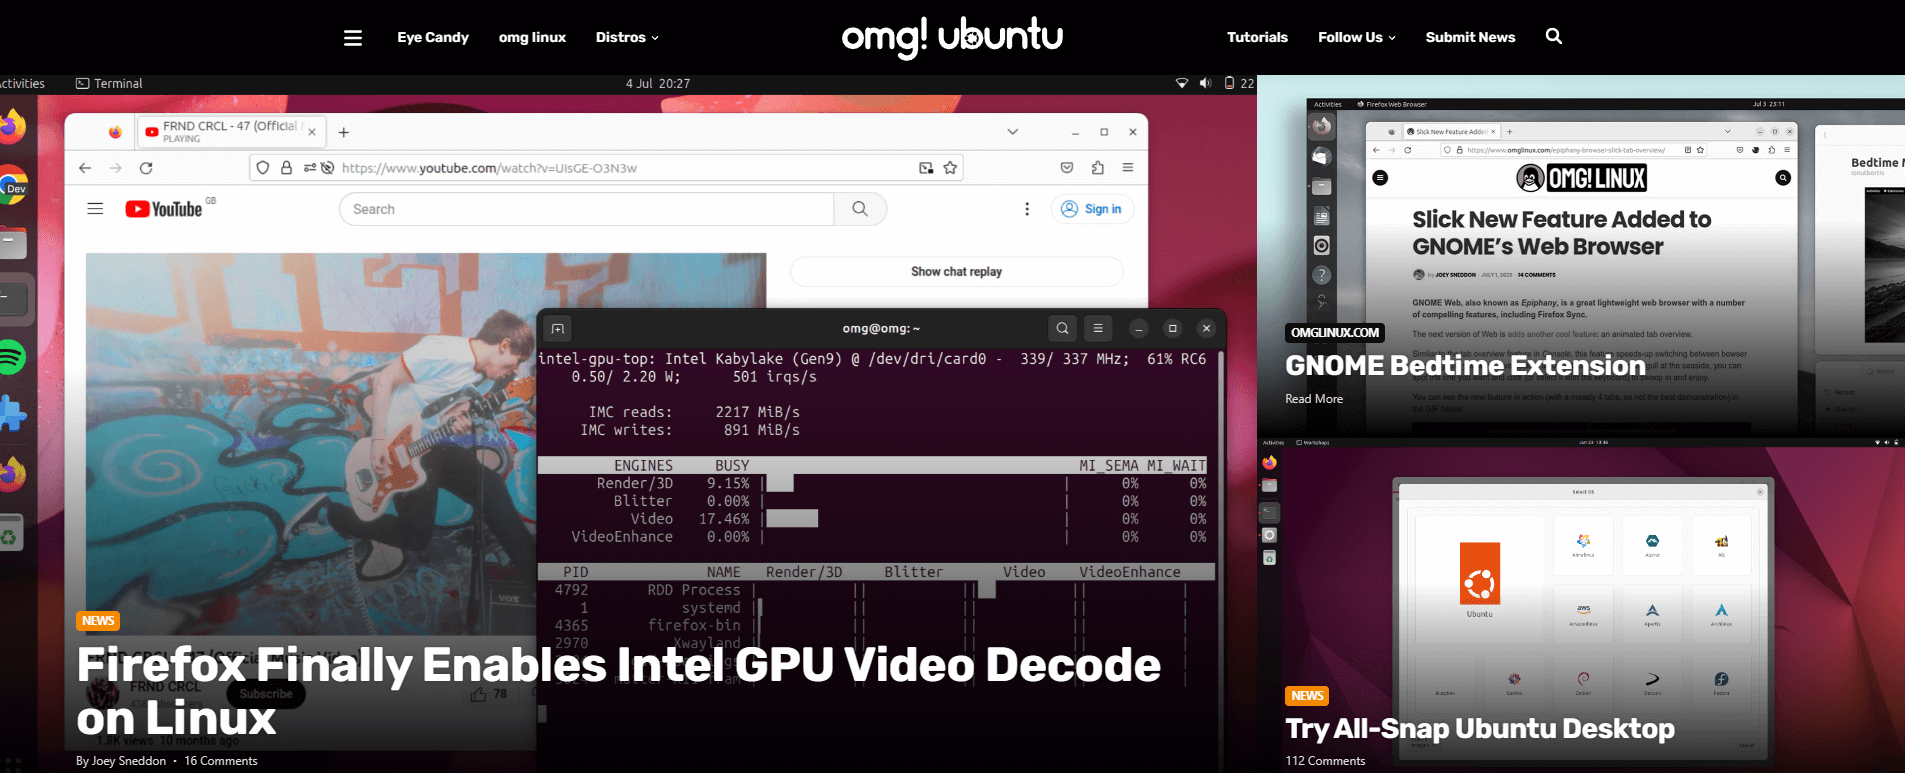 a screenshot of the omg! ubuntu! homepage